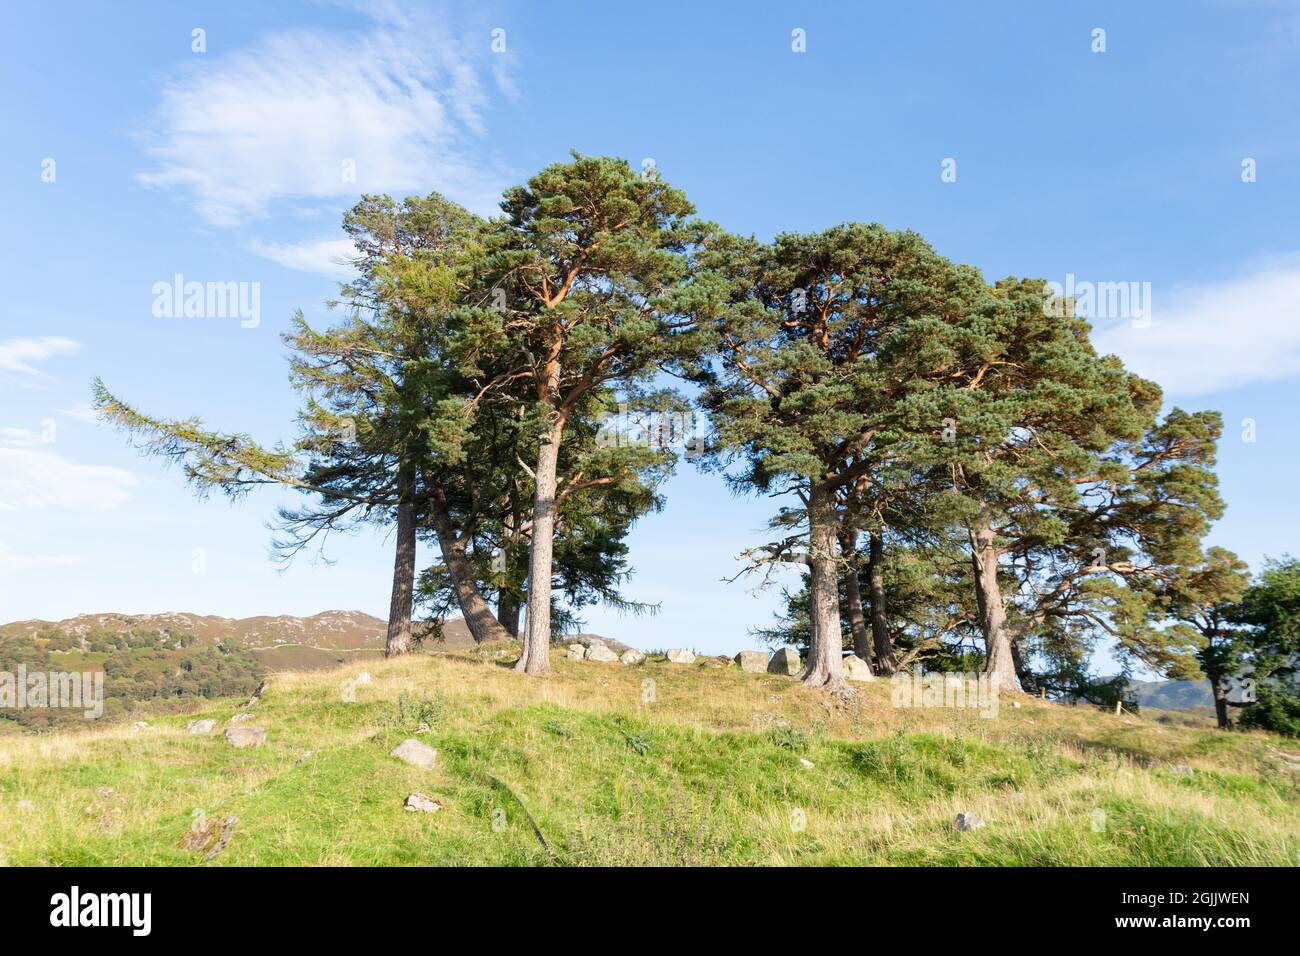 Craigh na Dun - location delle riprese di Outlander - Dunalastair Estate, Kinloch Rannoch, Perthshire, Scozia, Regno Unito Foto Stock